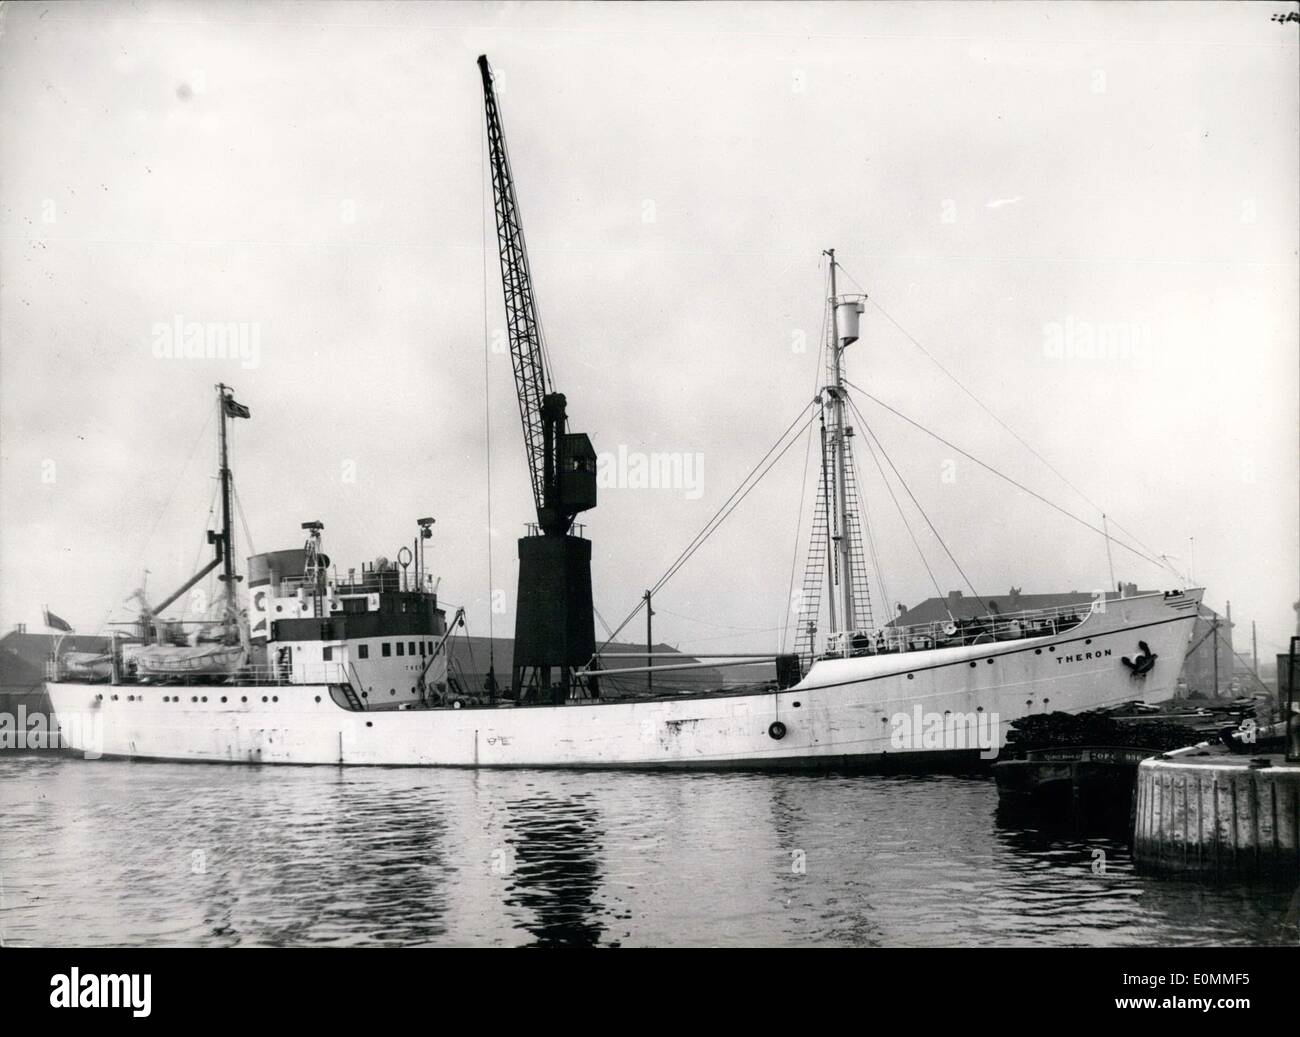 11 novembre 1955 - Le chargement du ''Theron'' pour l'Expédition transantarctique. Le joint Catcher - Bateau à moteur ''Theron'' (849 tonnes) a été chargé à Millwall Docks ce matin avec son équipement spécial et les stocke en prévision de son départ lundi prochain pour la glace de mer du sud - avec les 16 Etats parties à l'avance pour l'Expédition transantarctique 1955. Photo : Keystone montre- Vue de la ''Theron'' au Millwall Docks ce matin. Banque D'Images